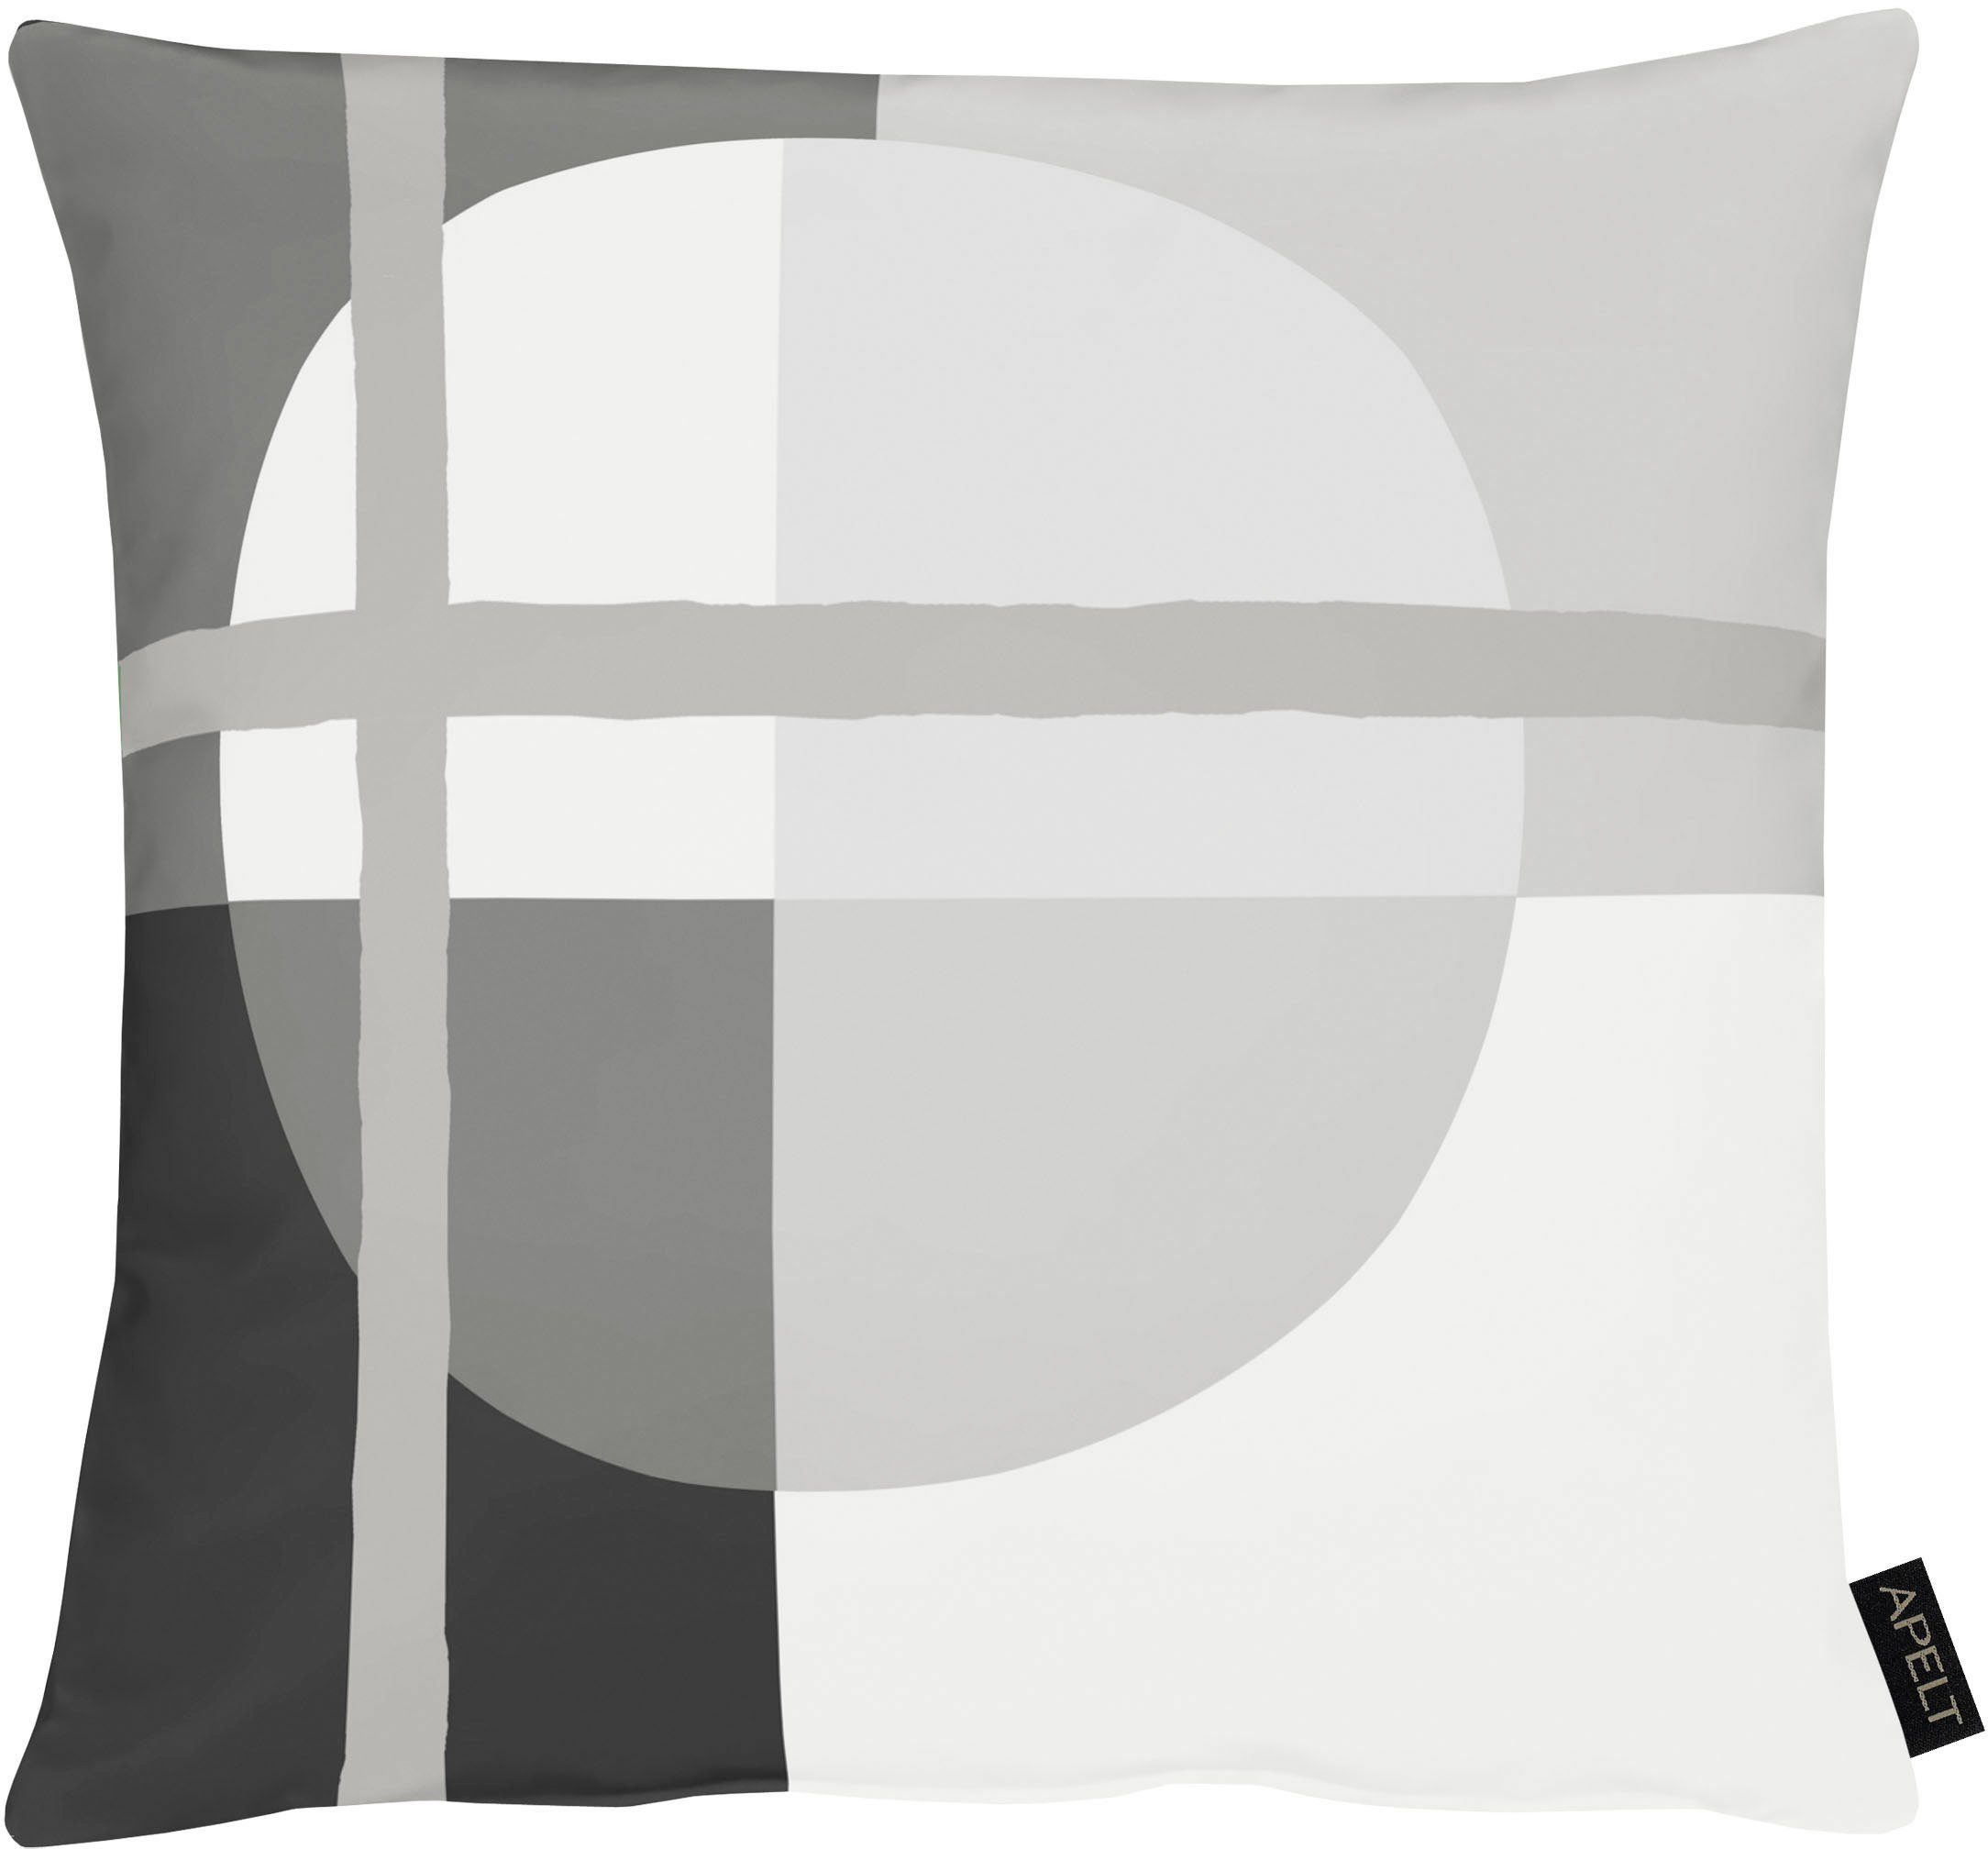 APELT Dekokissen Raoul, im Bauhaus-Stil, Kissenhülle ohne Füllung, 1 Stück grau/weiß/schwarz